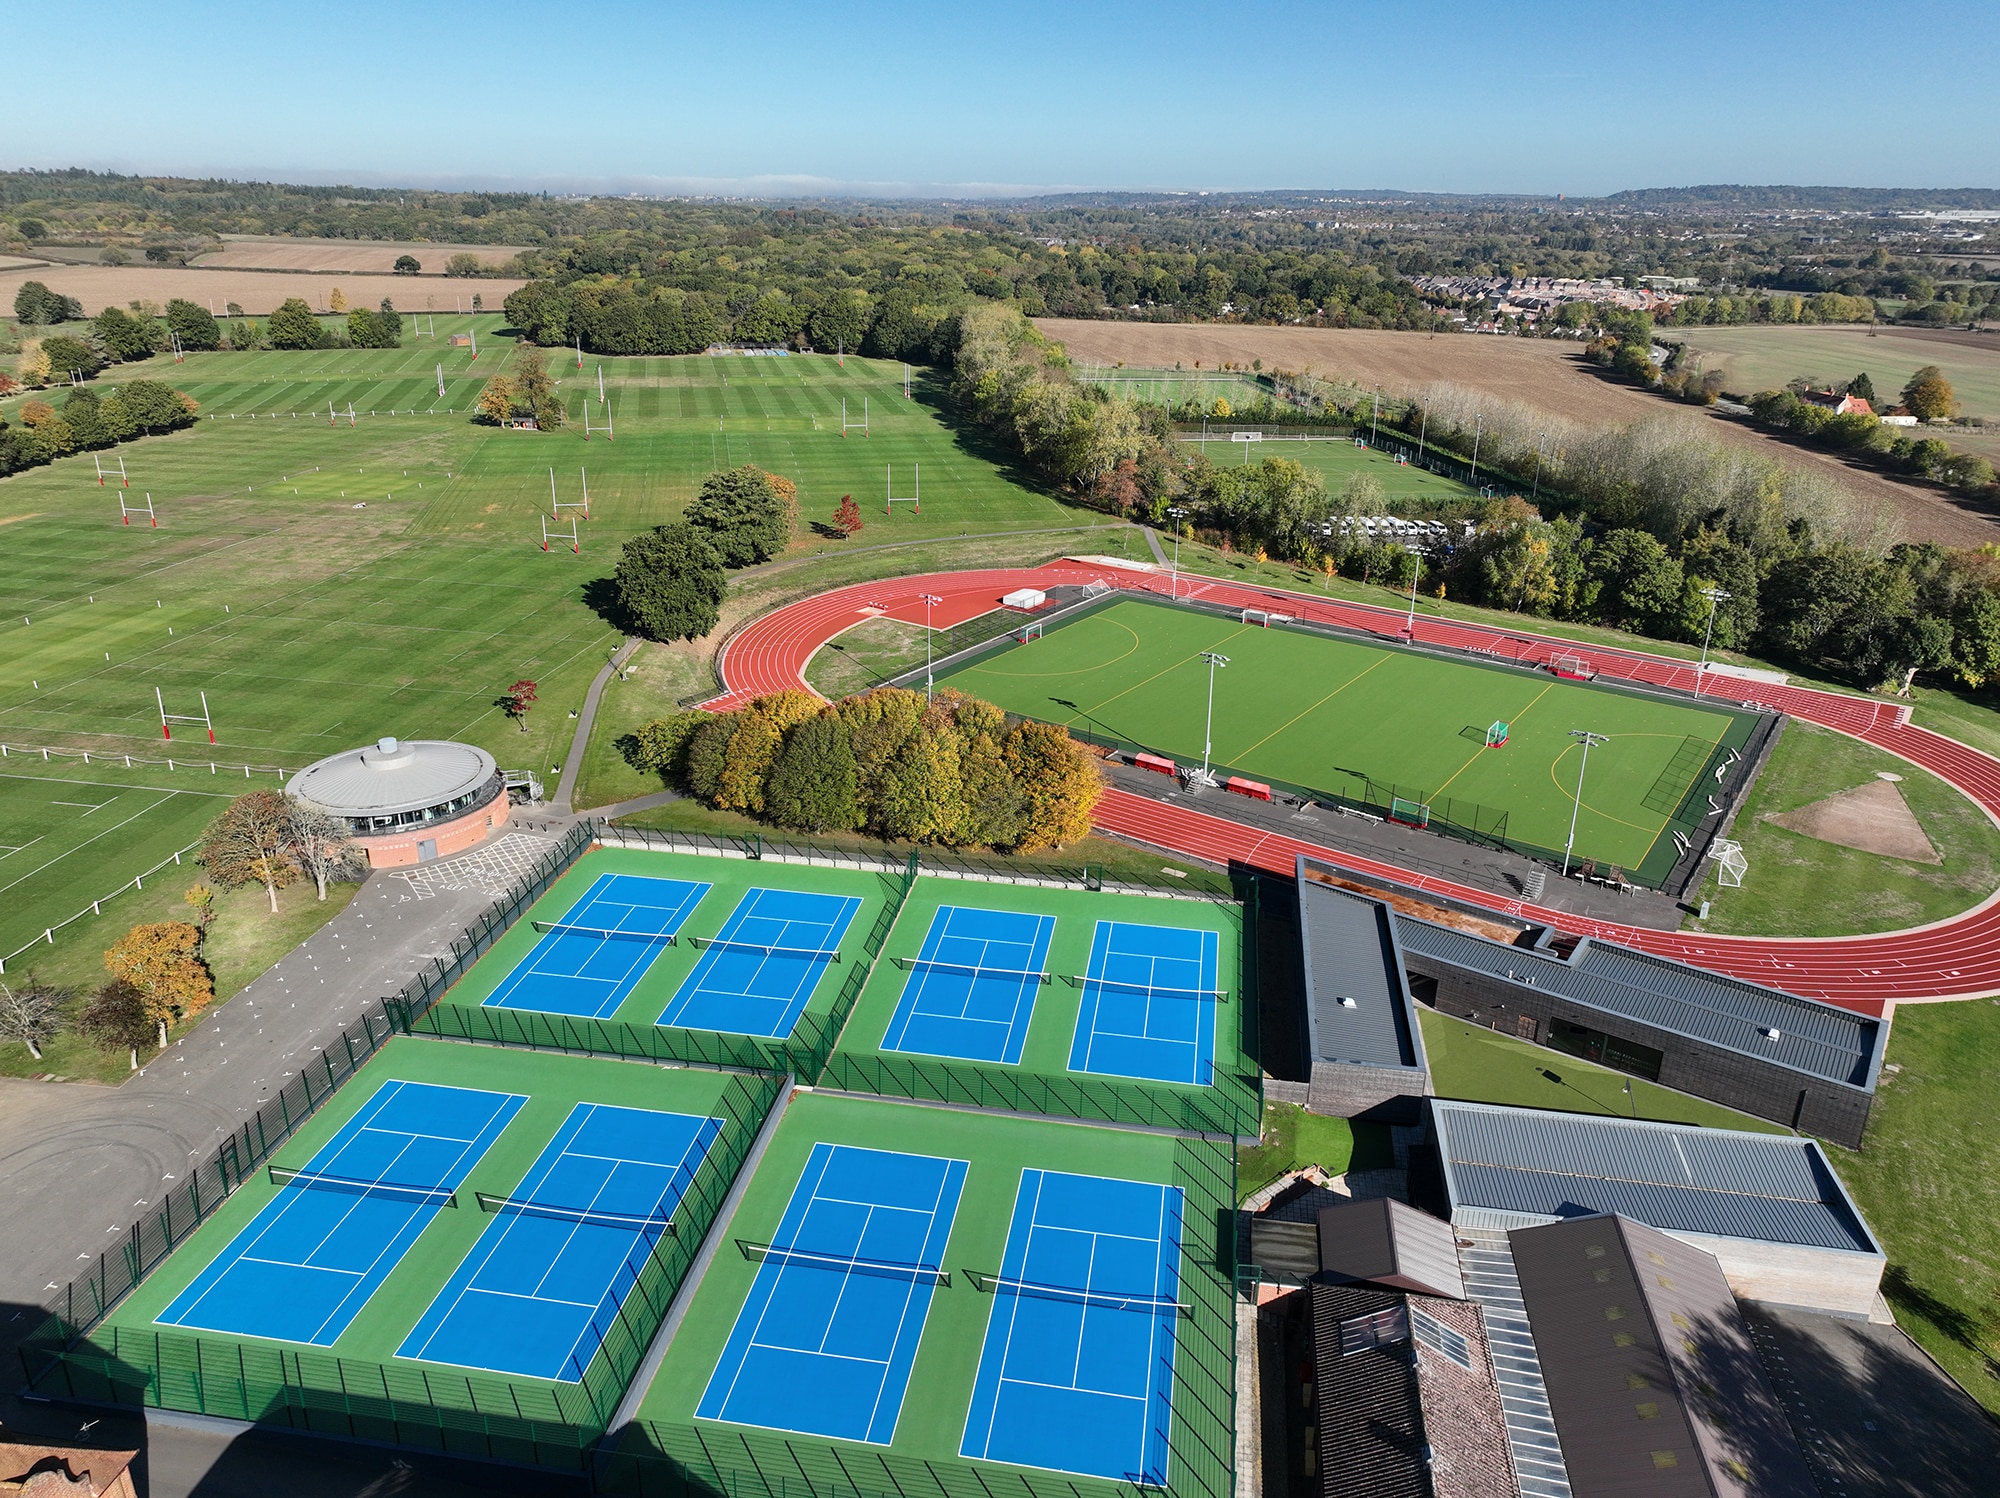 Huit nouveaux courts de tennis en acrylique de Radley College en Angleterre